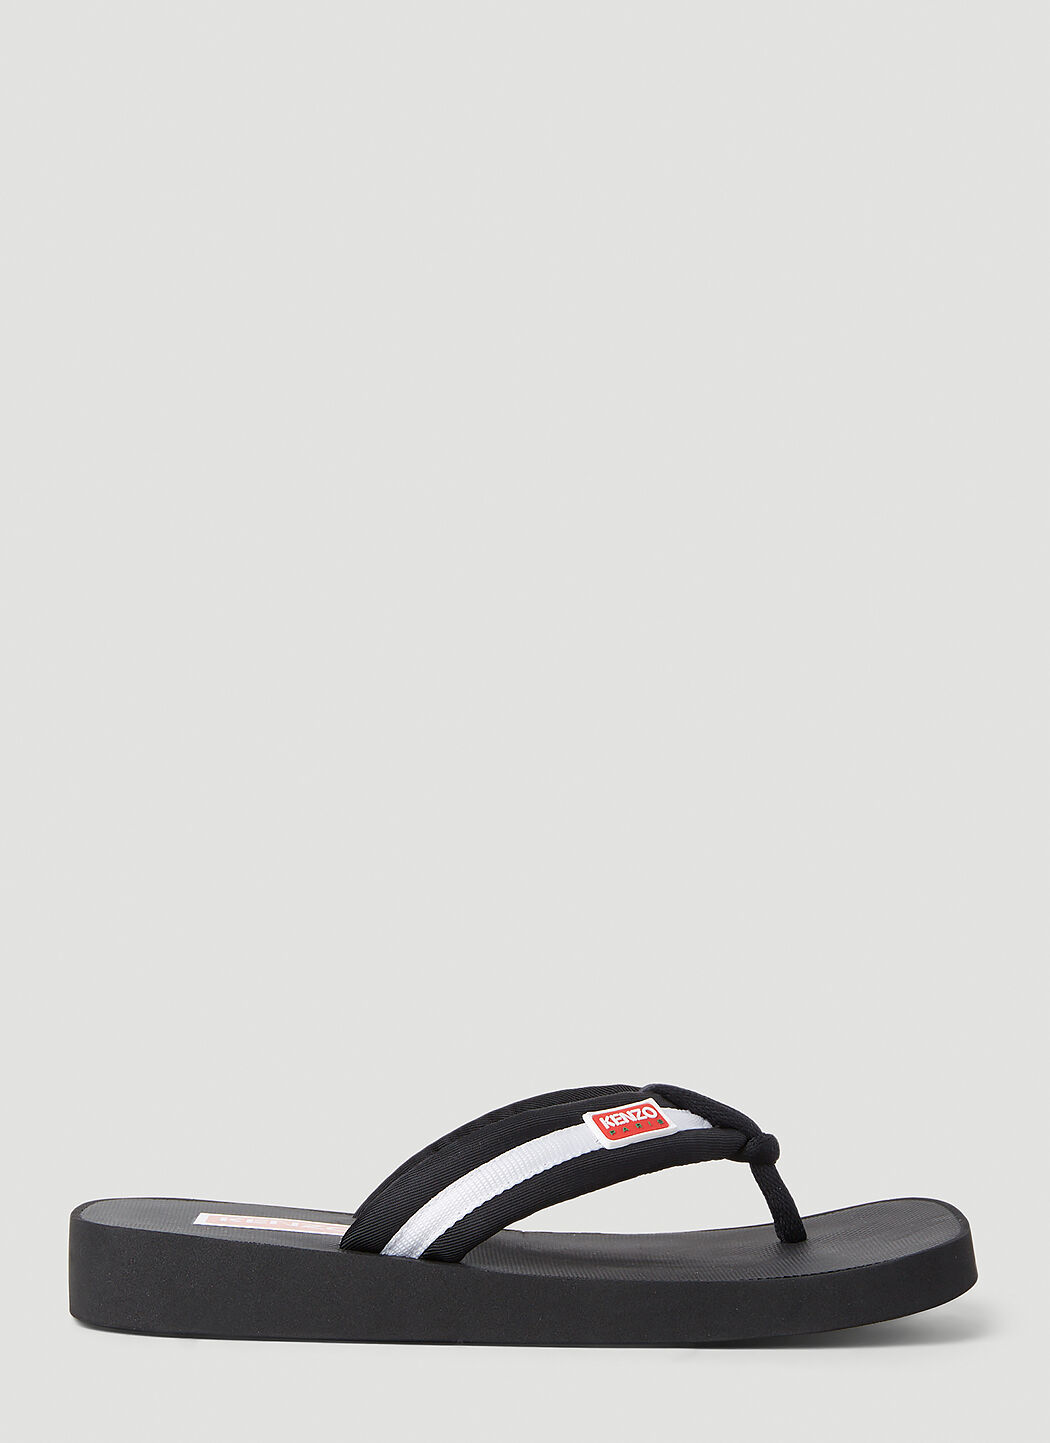 KENZO Sandals for Women | ModeSens